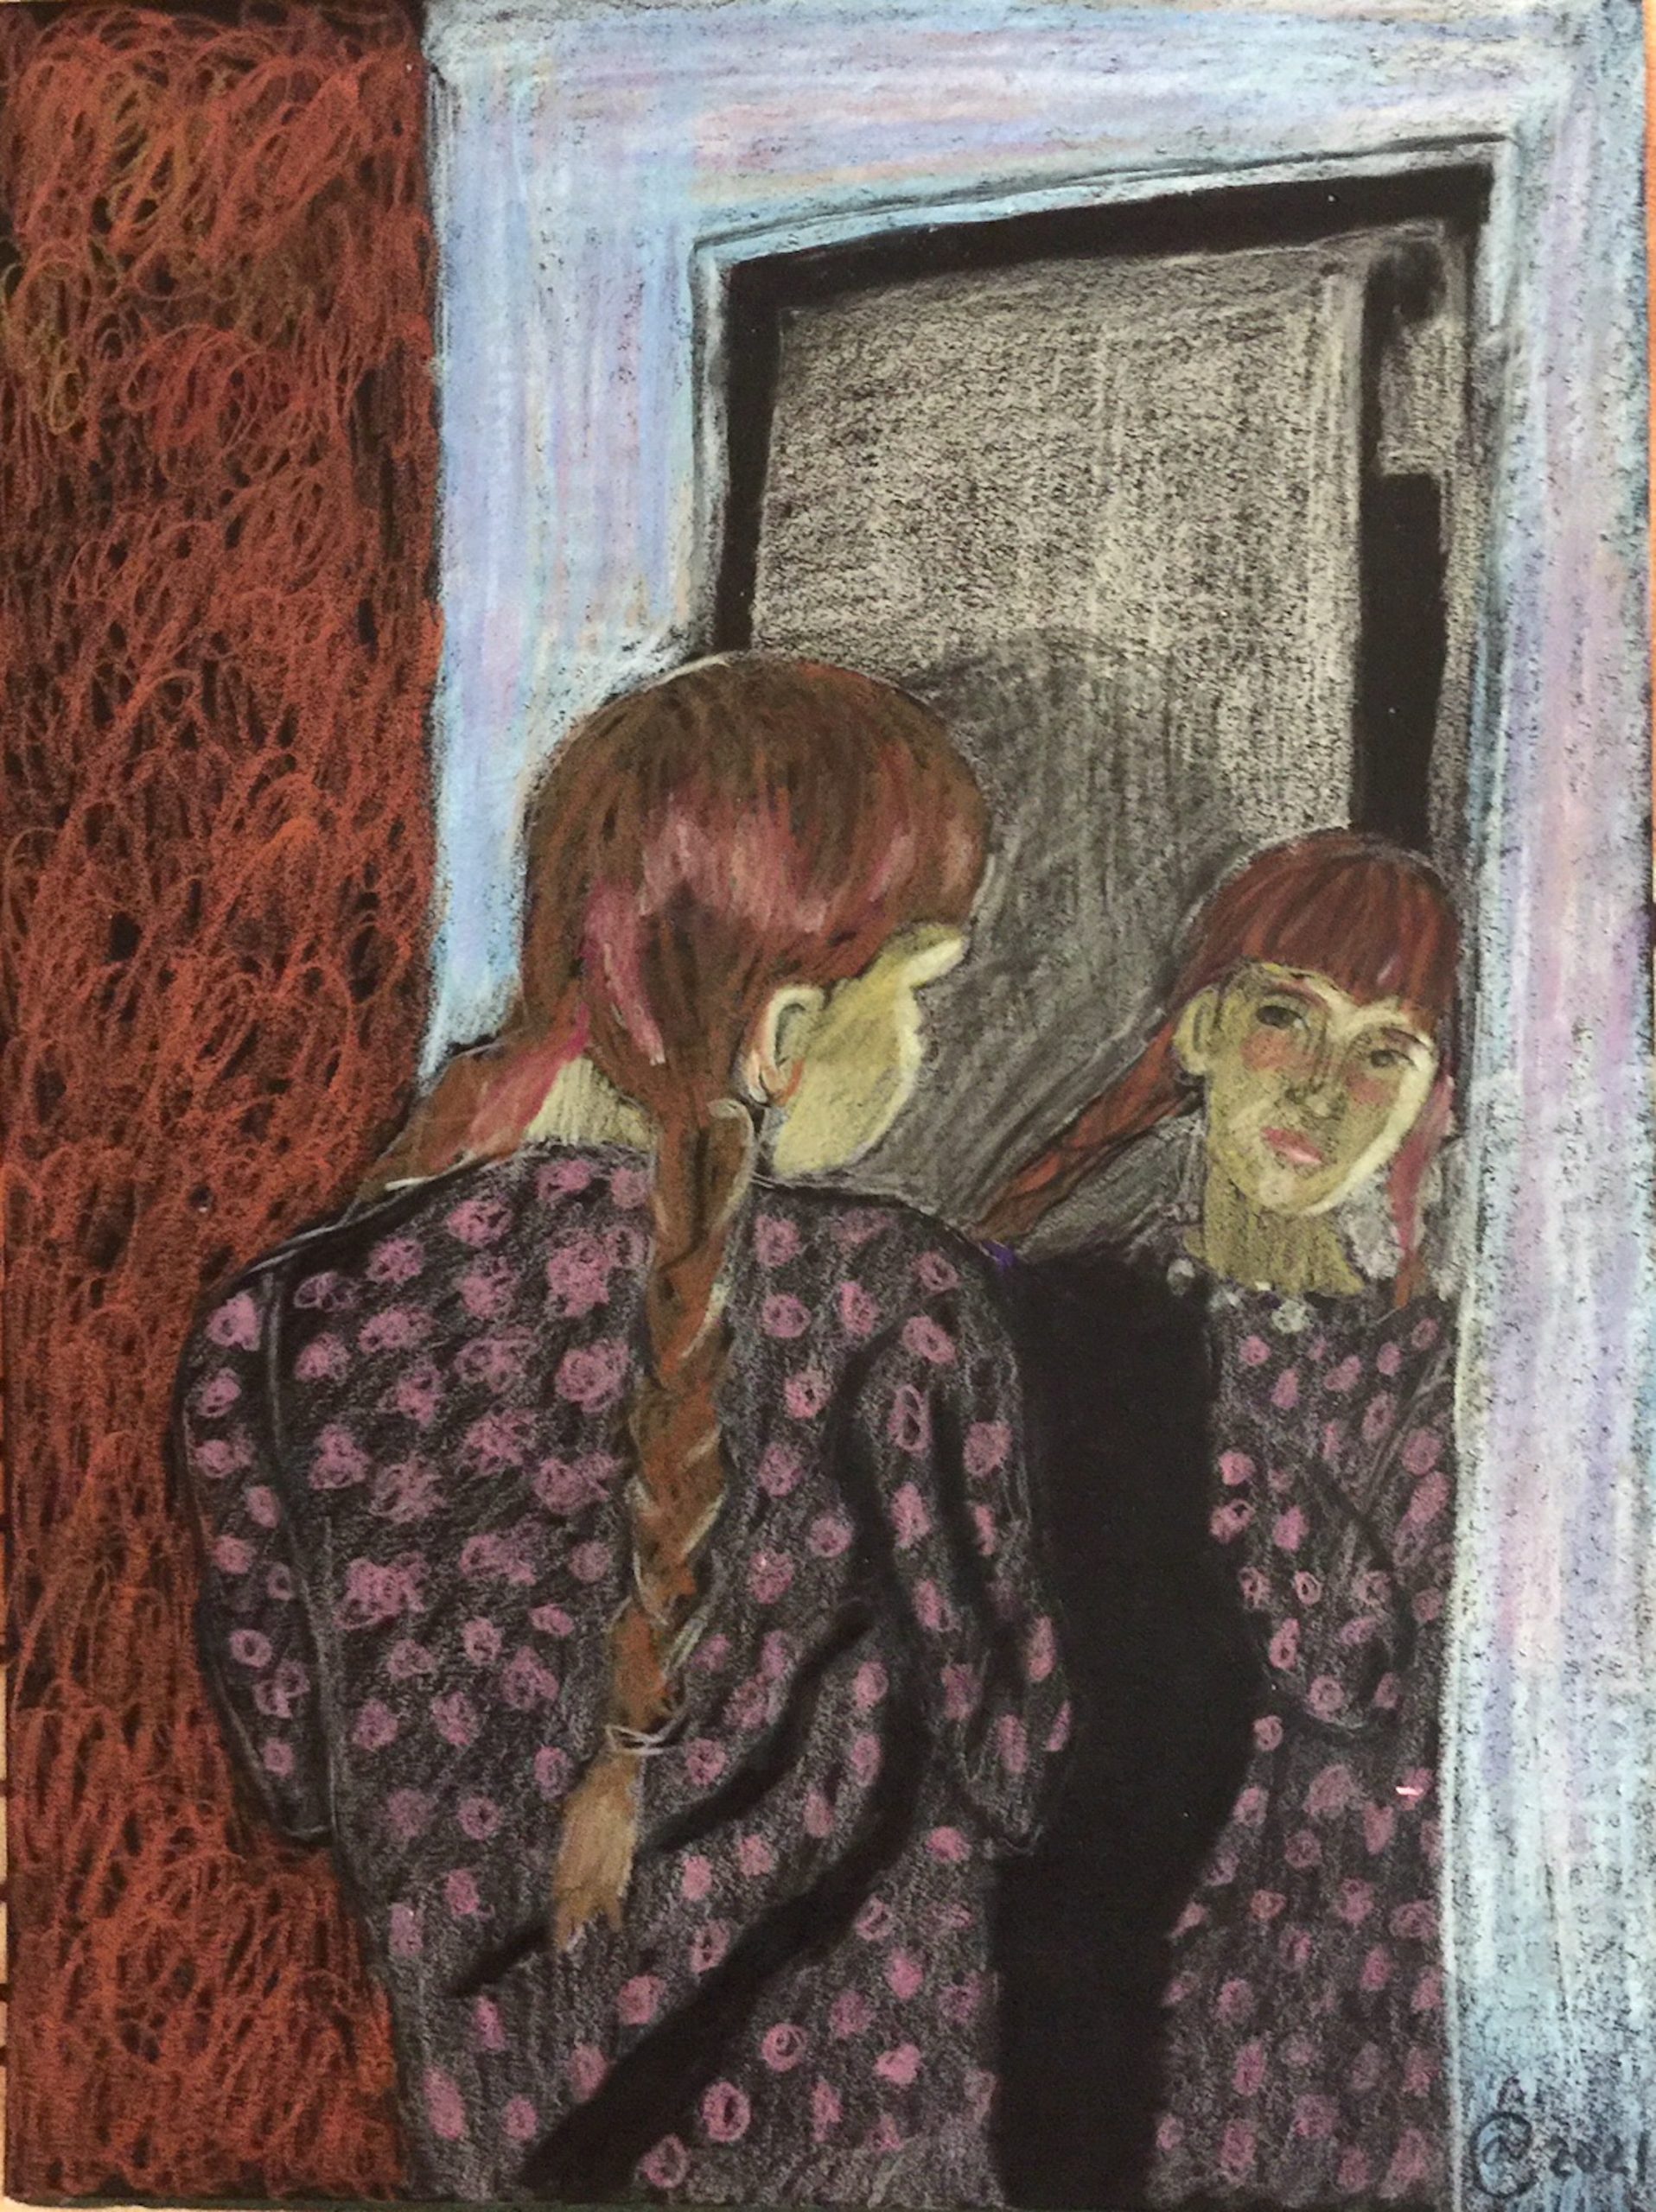 Mirror by Ann Calandro